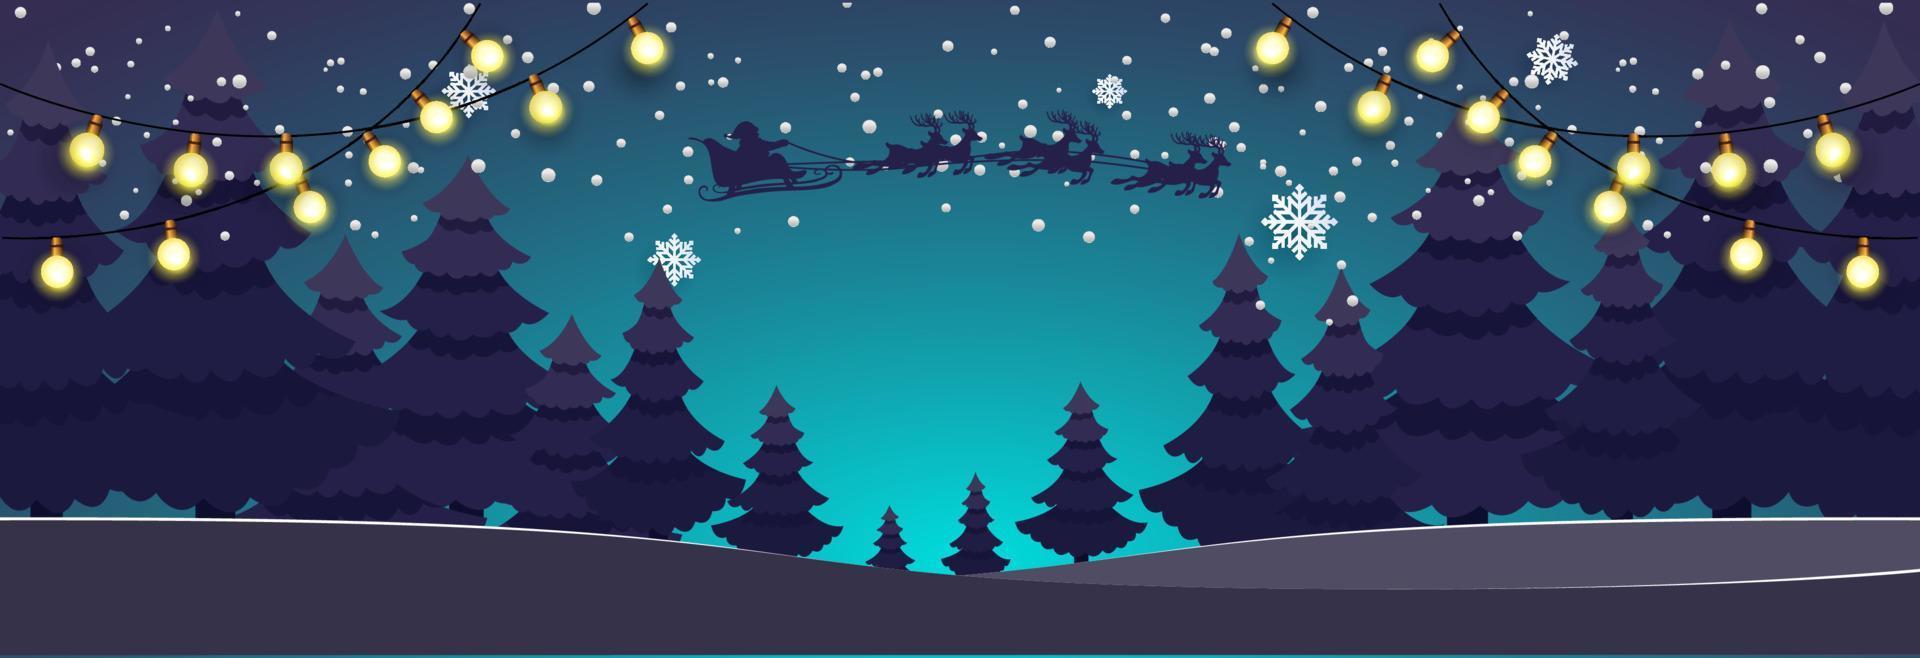 Papai Noel com veados voando sobre uma floresta. ilustração de inverno vetor